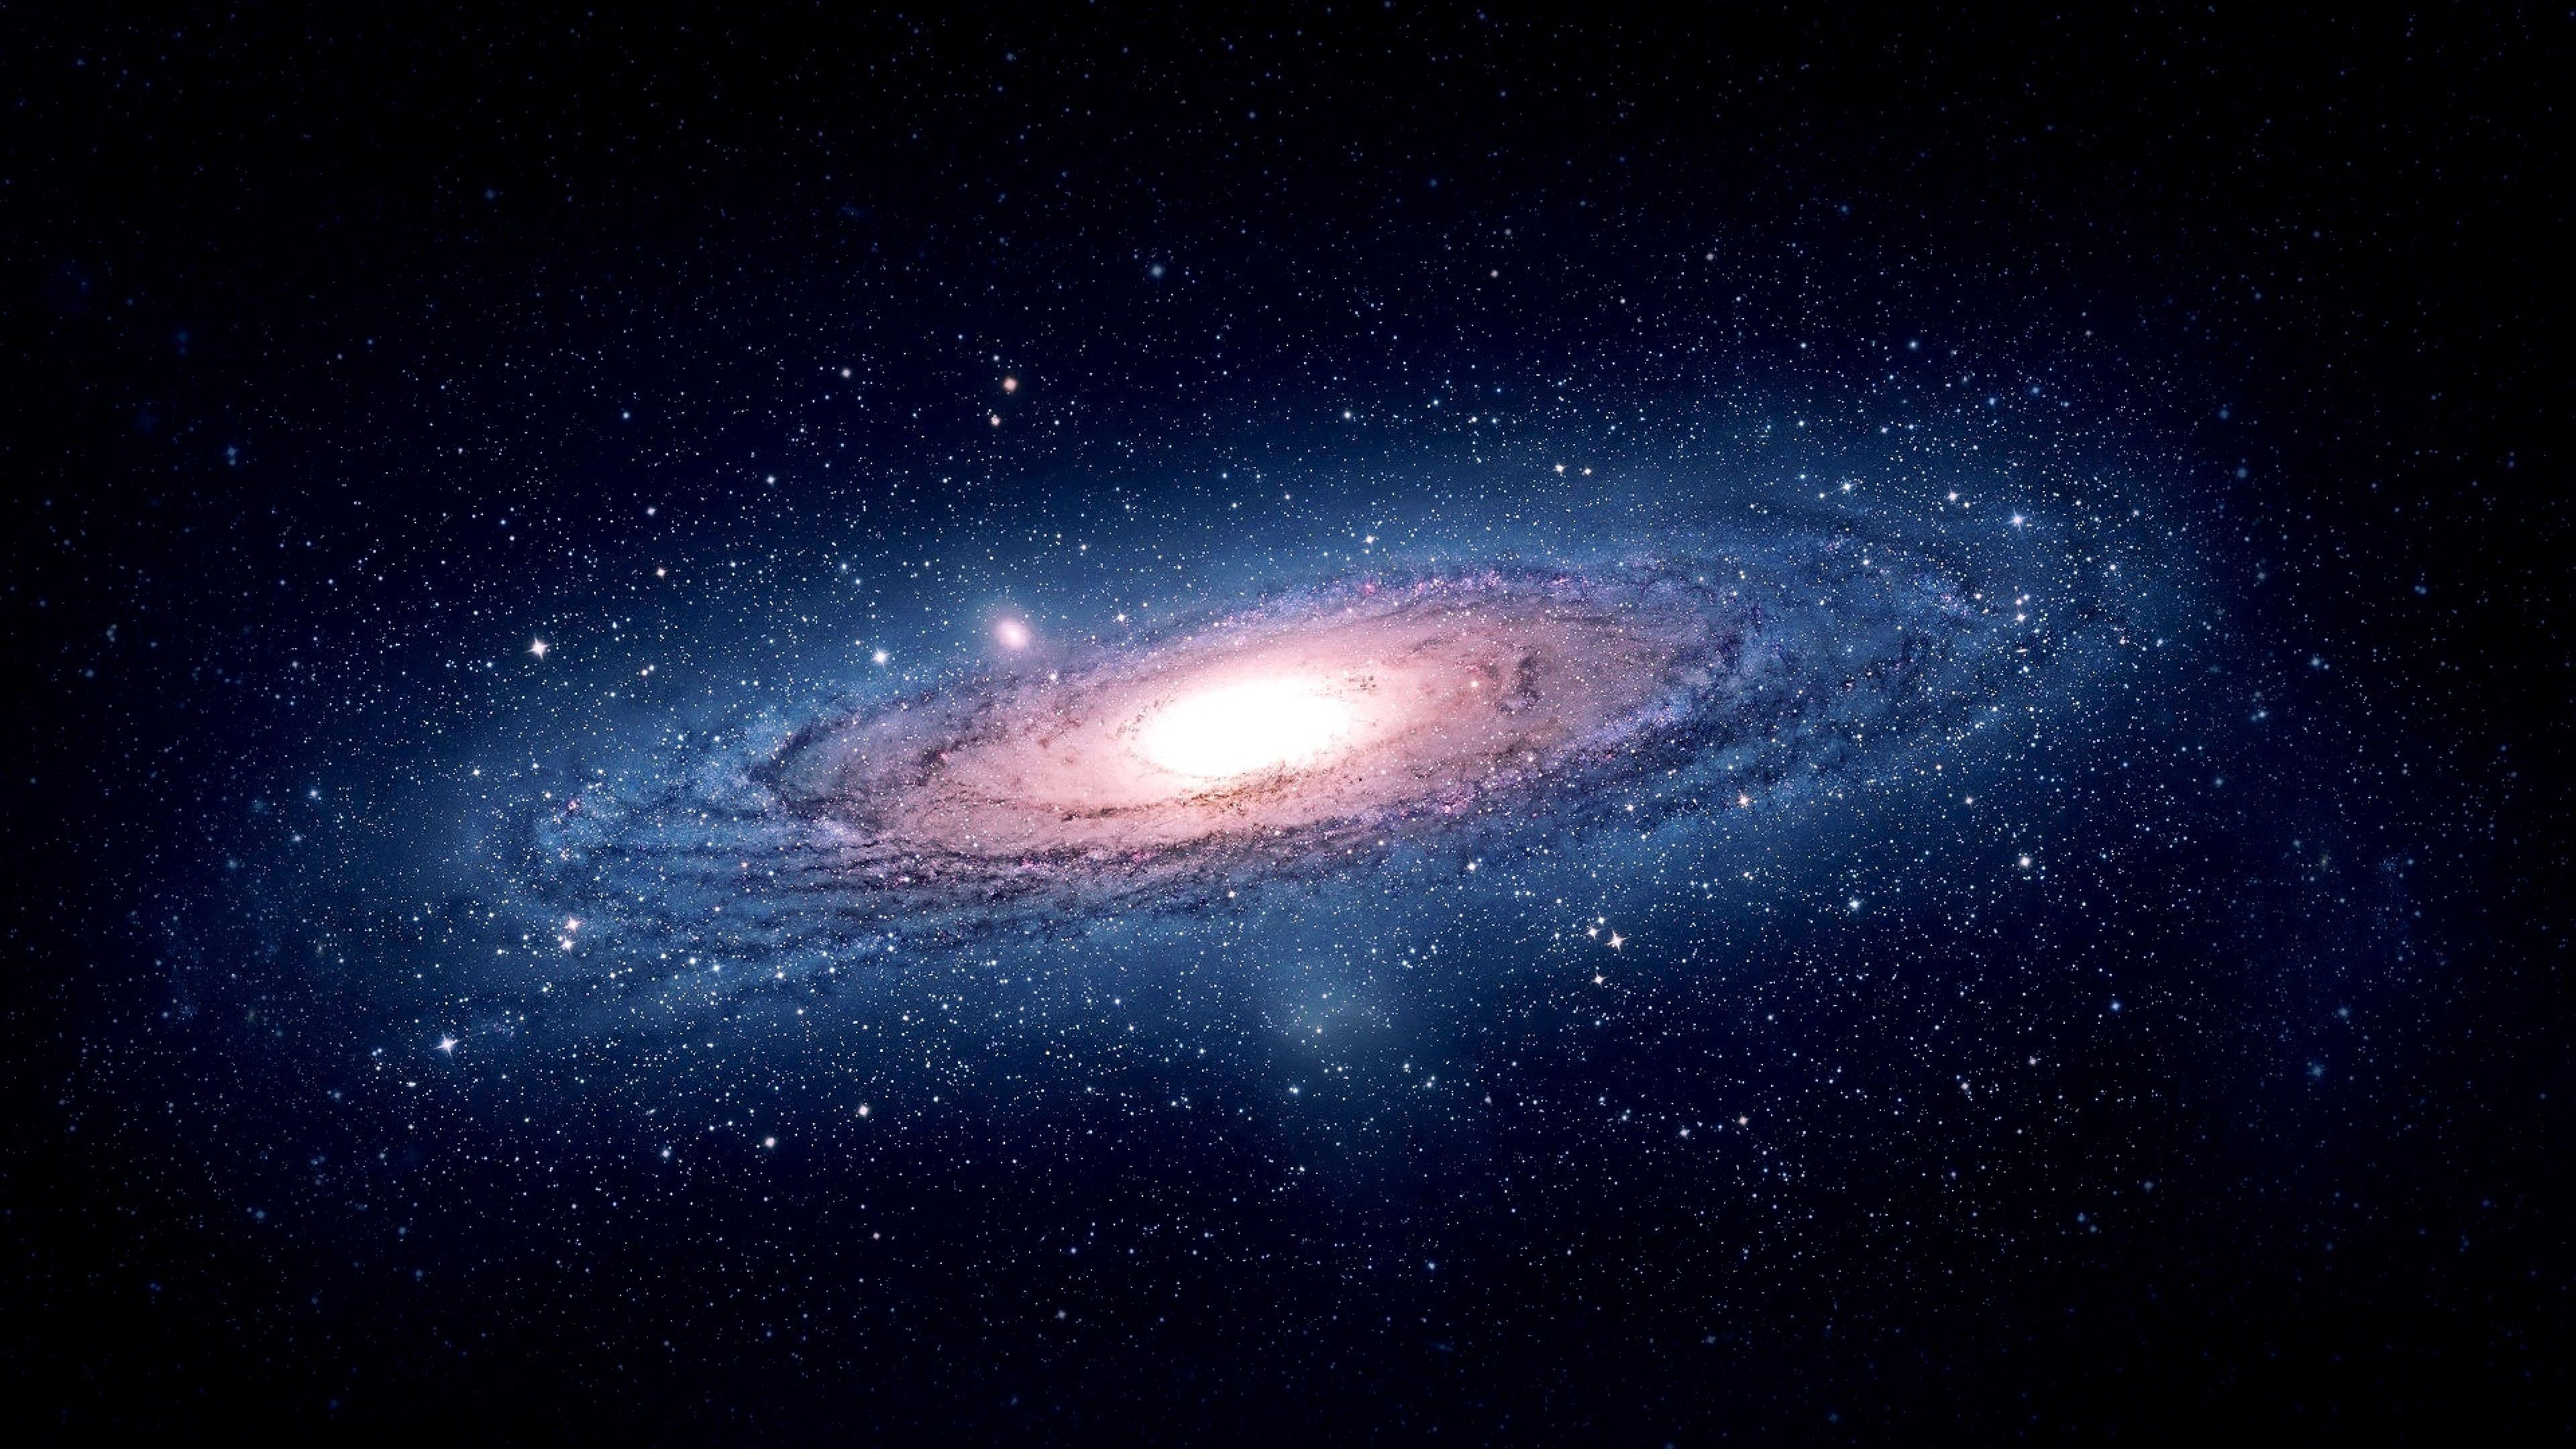 Andromeda Galaxy 4K Wallpaper, khiến trái tim ai cũng phải đập thình thịch vì quá đẹp. Bầu trời rực rỡ những điểm sáng lấp lánh, tạo nên cảm giác rất giống như đang ngắm nhìn một bức tranh nghệ thuật hoàn hảo. Bấm vào hình ảnh và cảm nhận vẻ đẹp đầy kinh ngạc từ Andromeda Galaxy 4K.